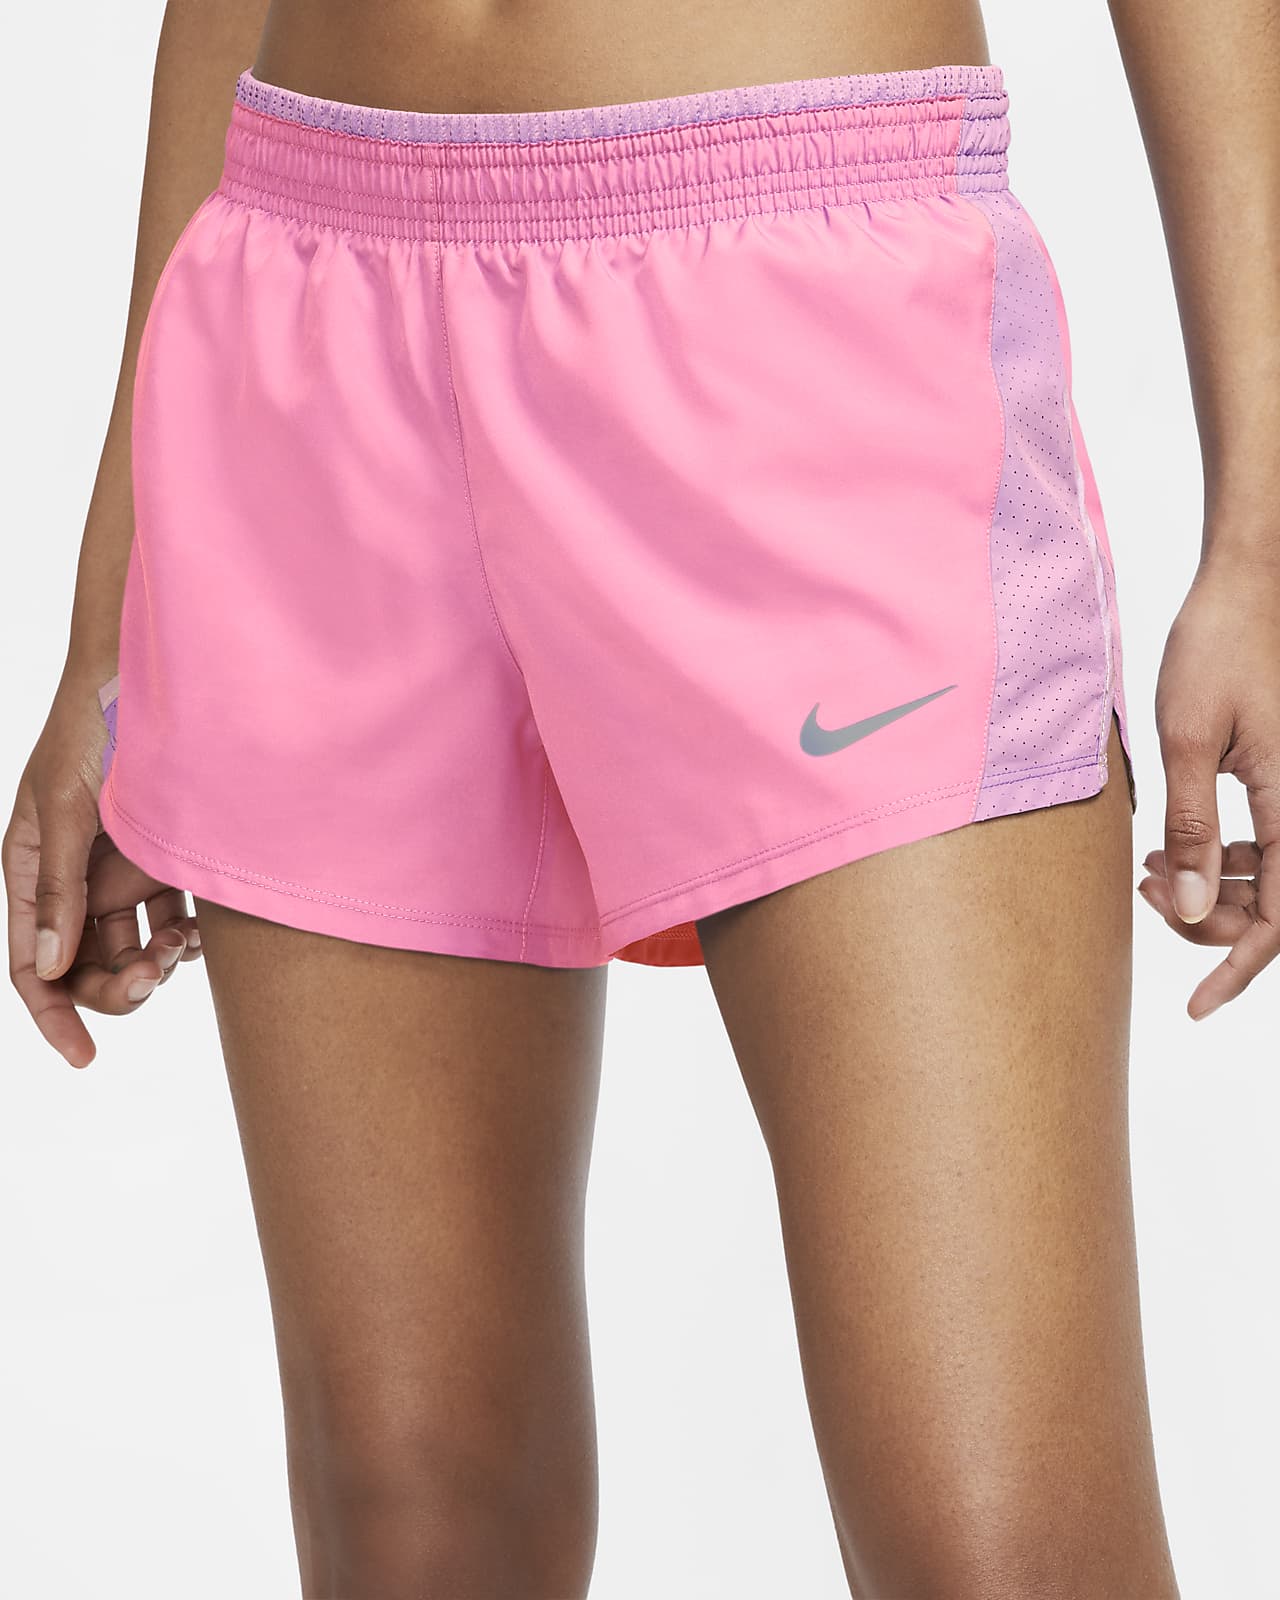 nike women's long running shorts